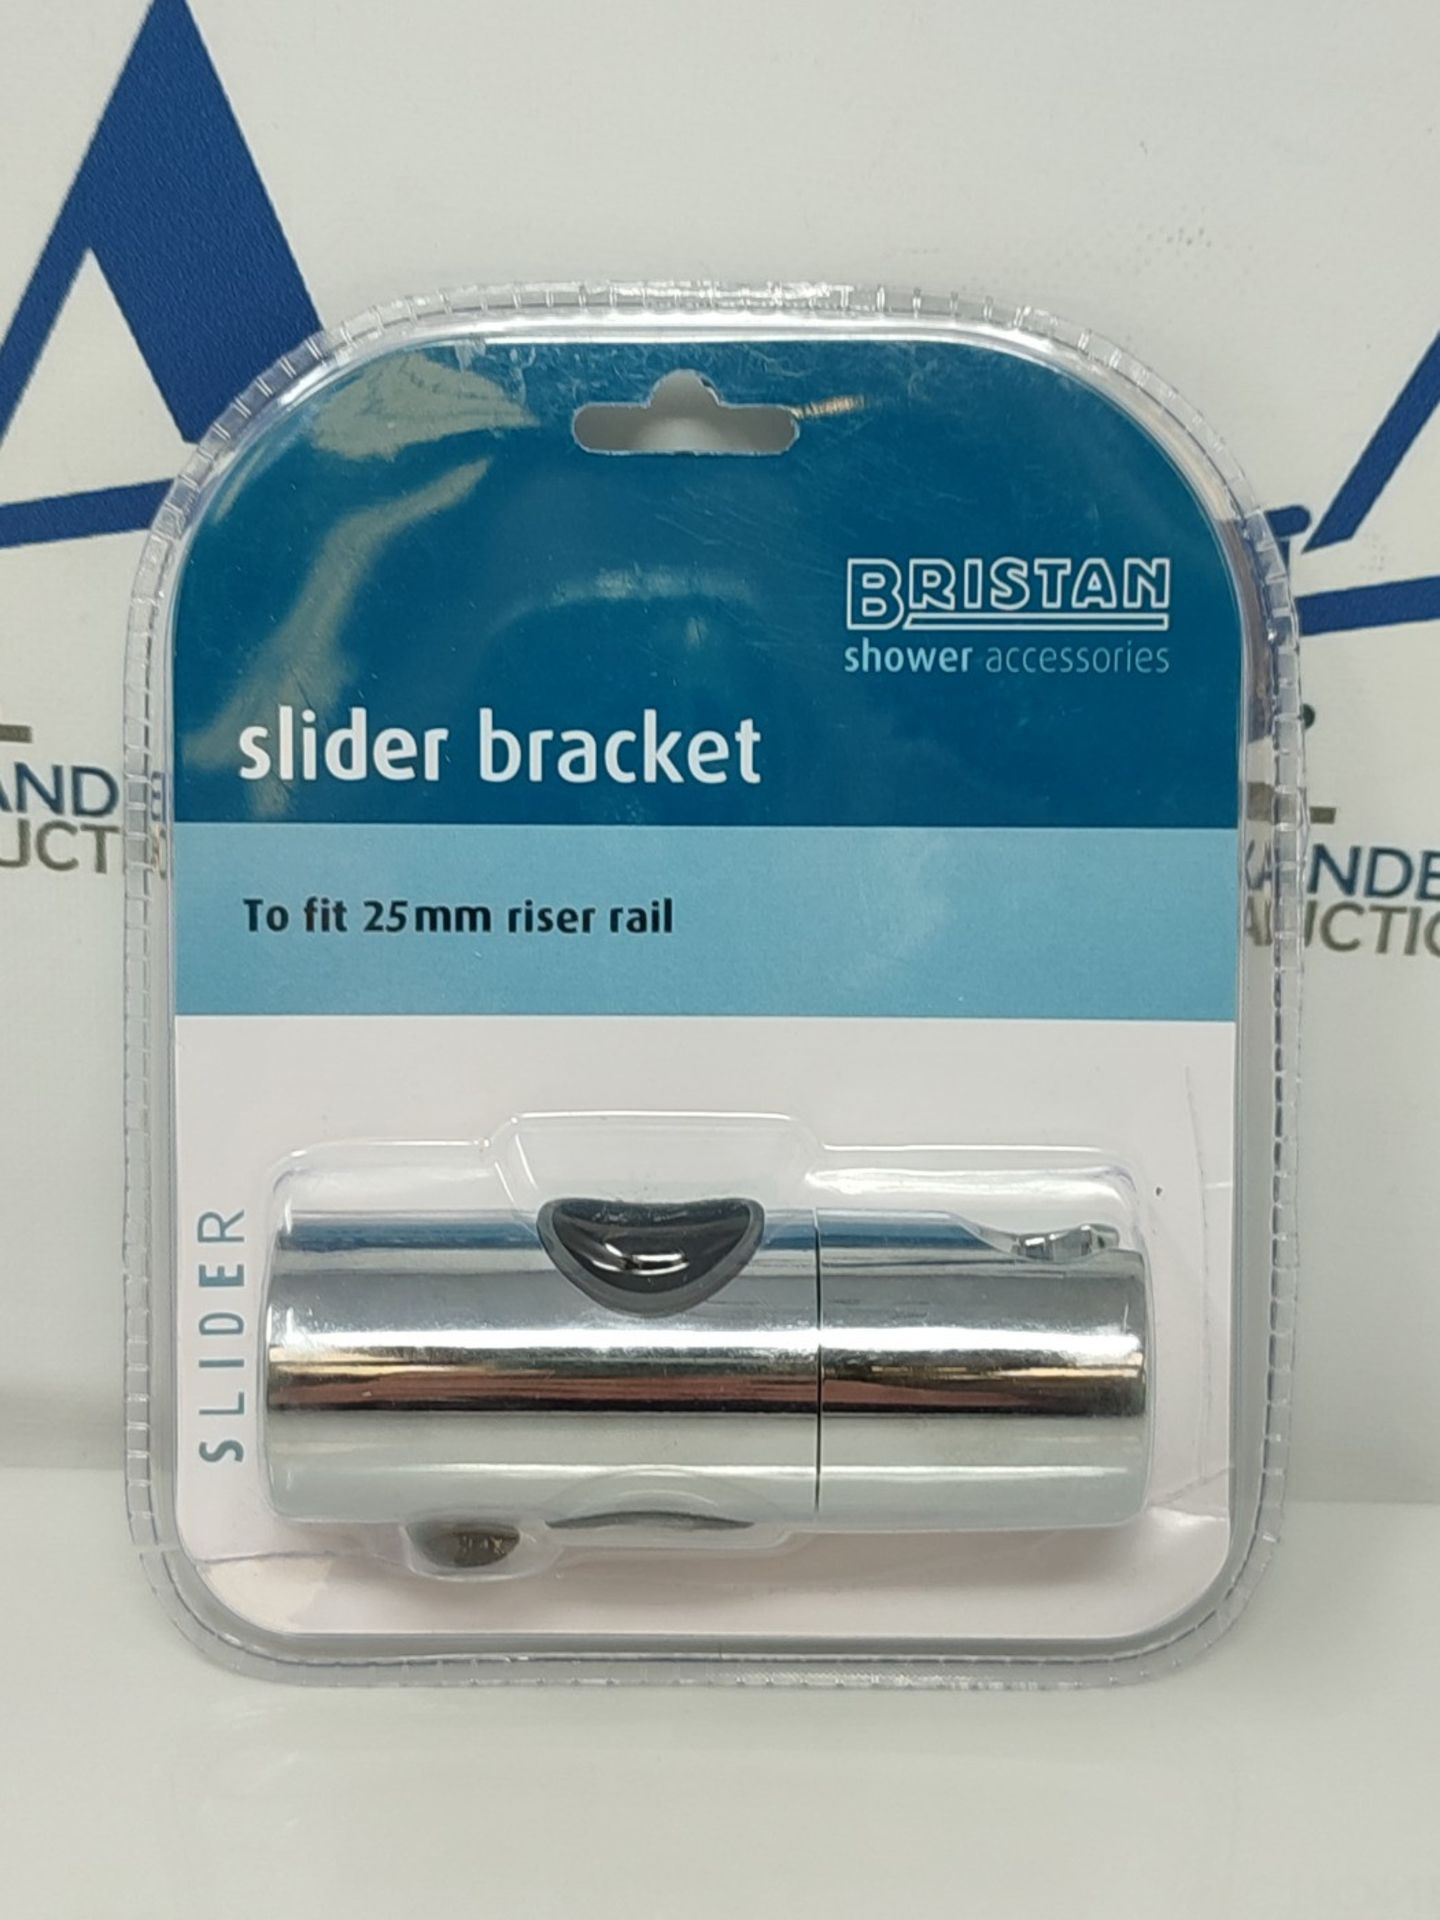 Bristan SLID101 C Slider Bracket 25mm - Chrome Plated - Image 2 of 3